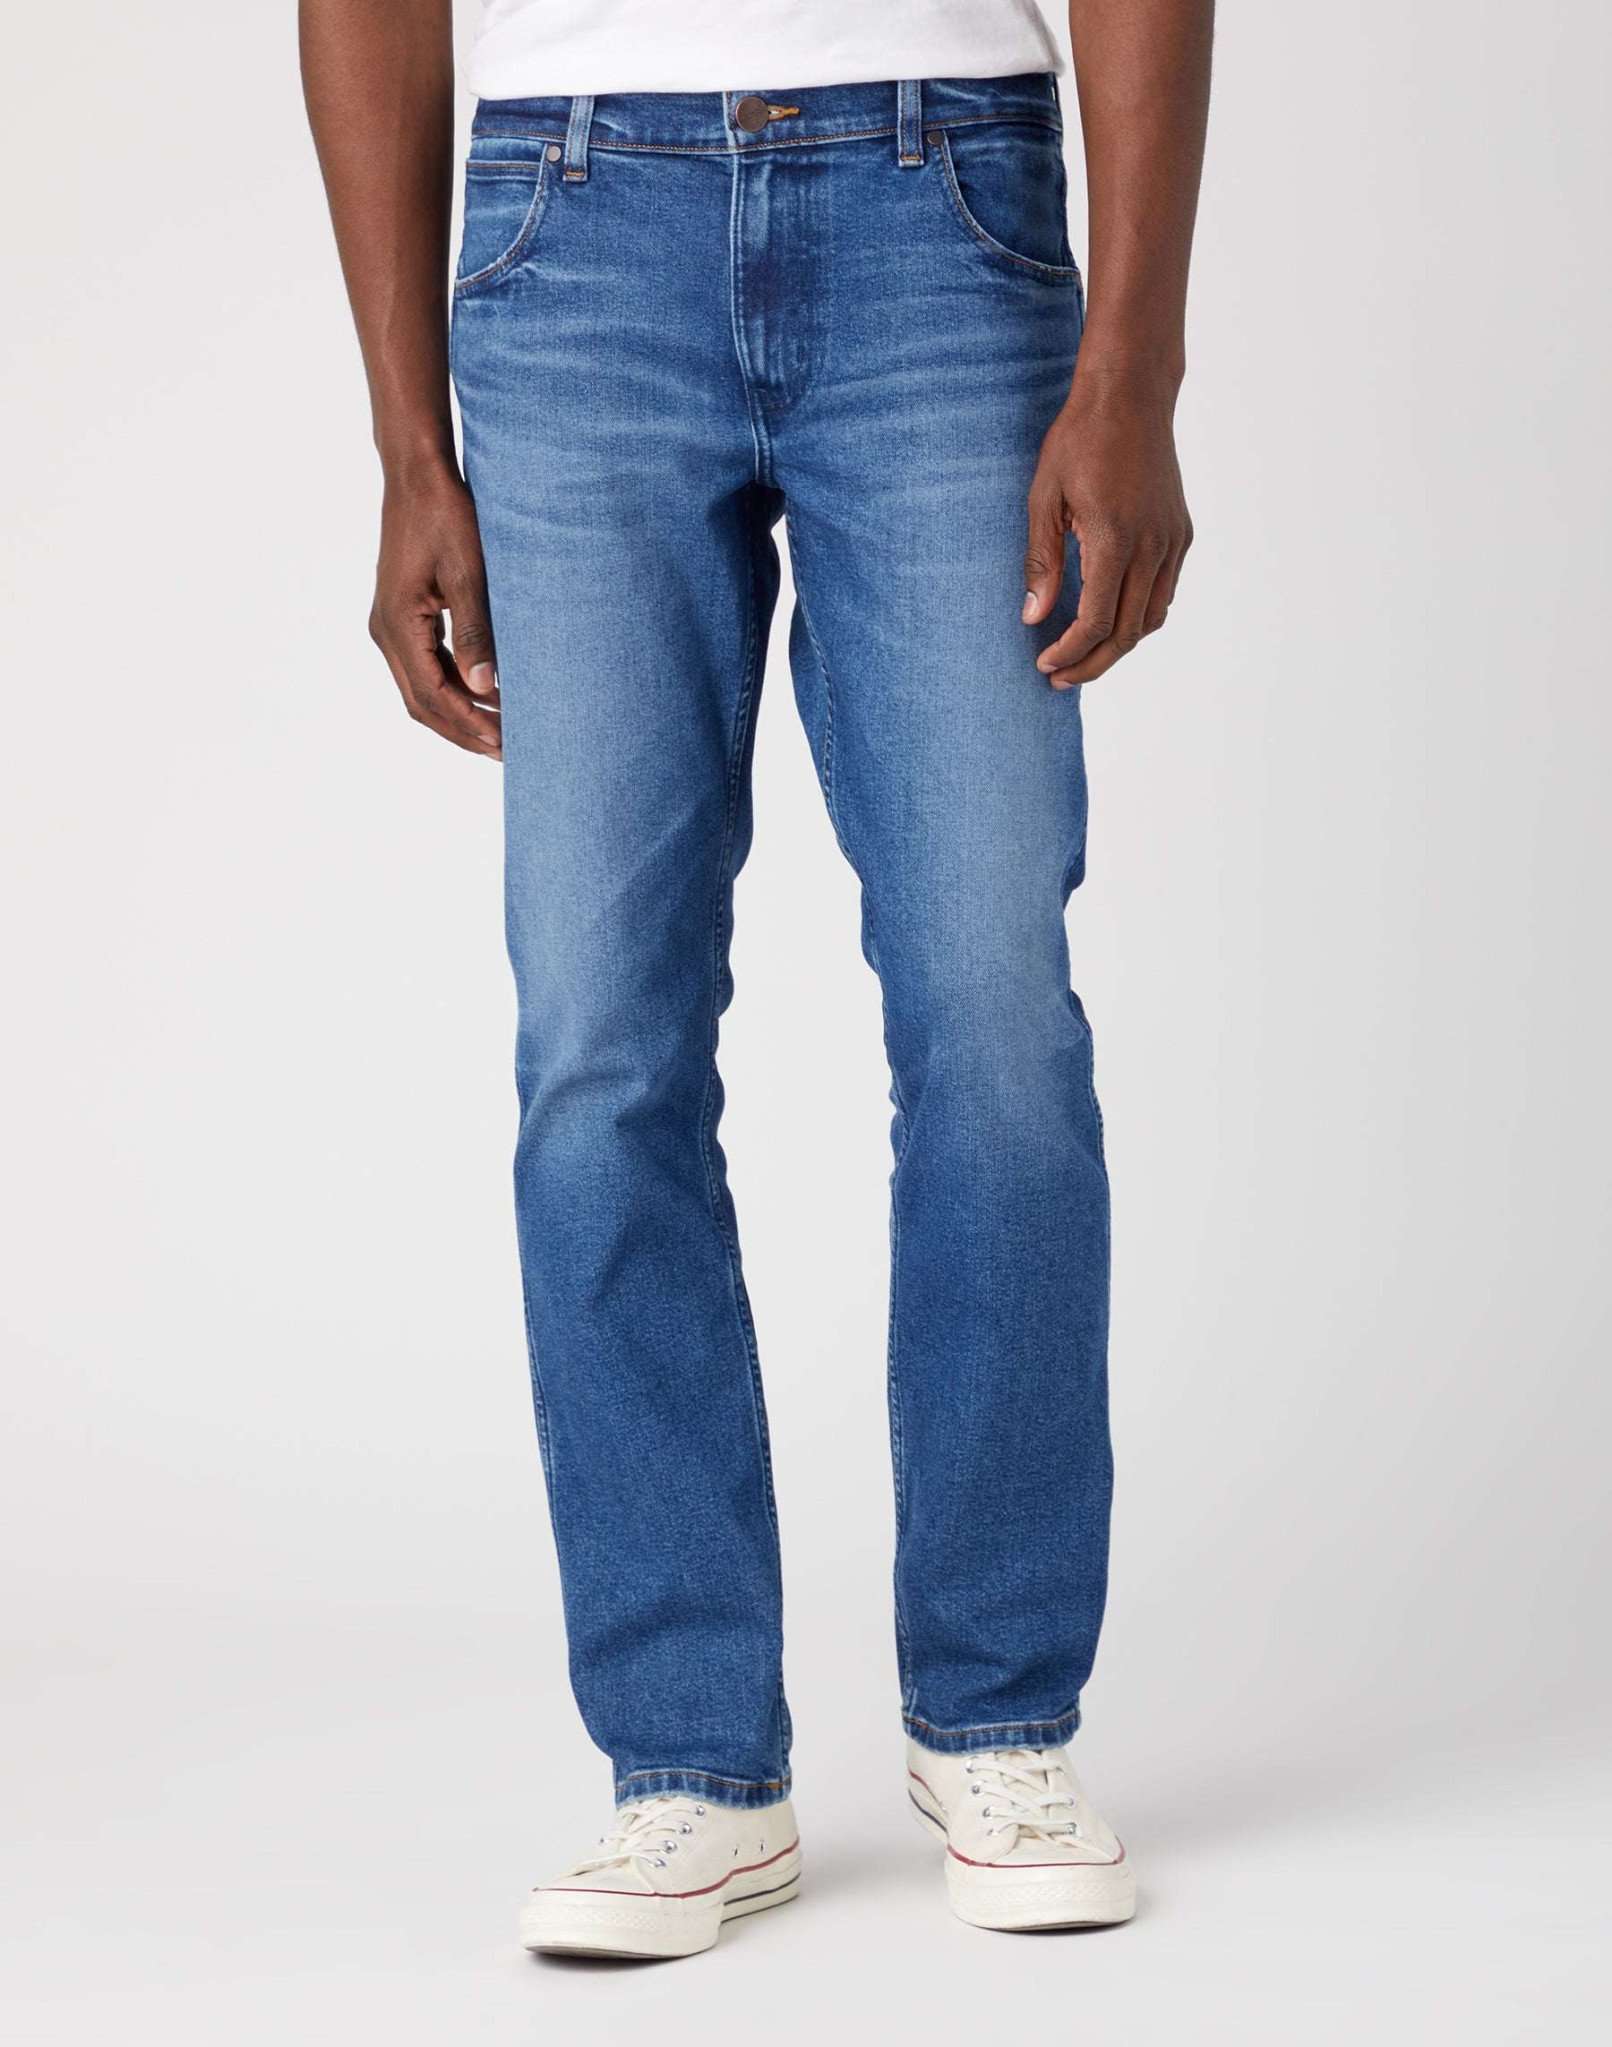 Greensboro Jeans in Neptun Jeans Wrangler   